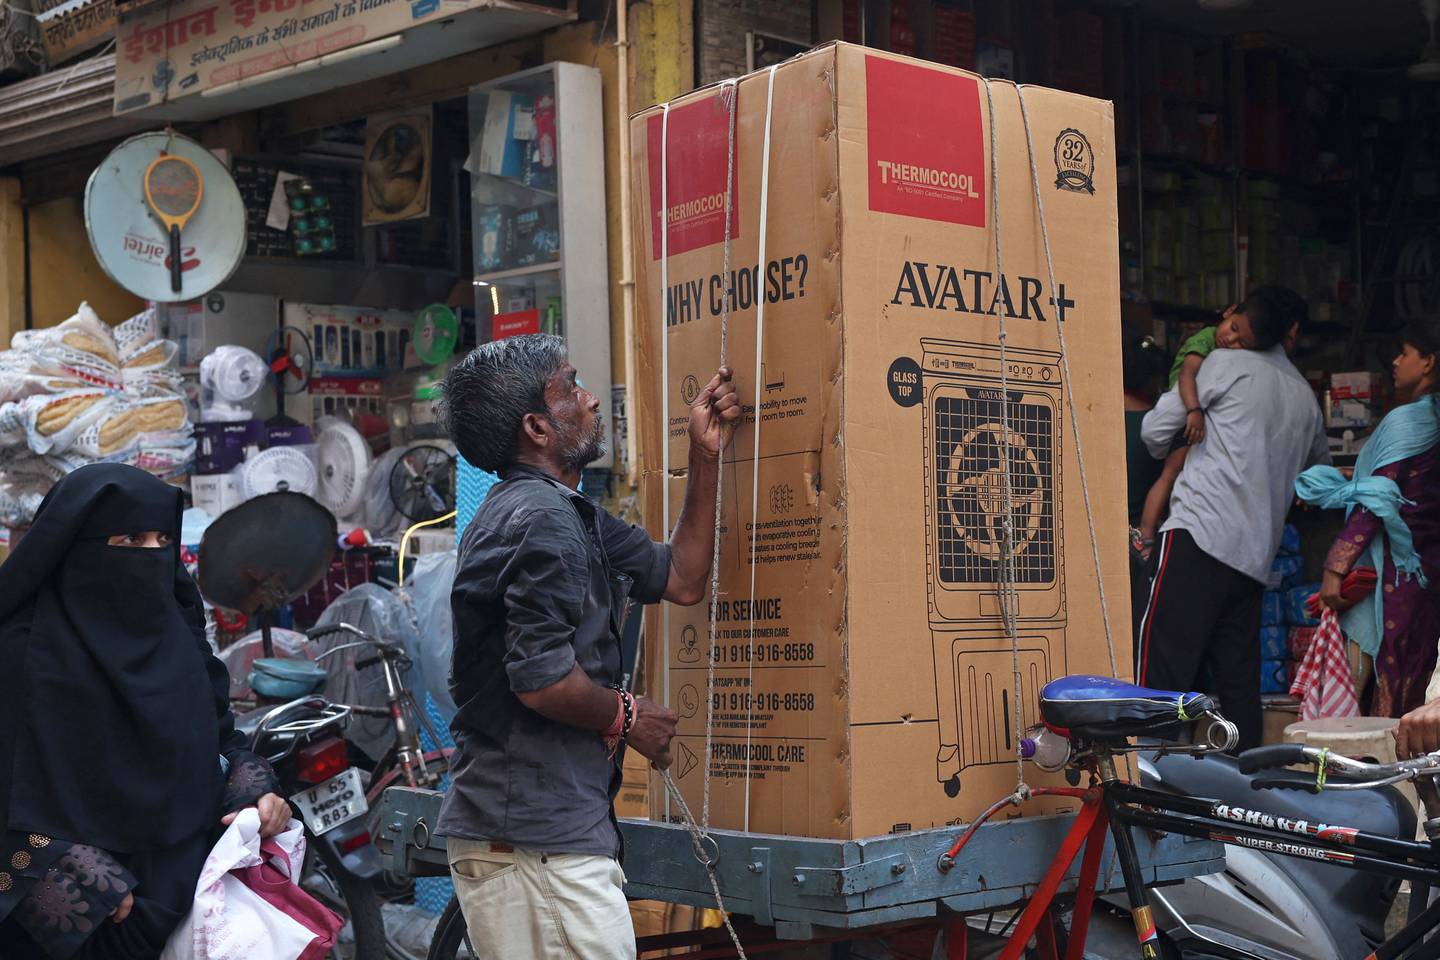 Sykkelen brukes også til få levert større og tynge varer. Her er en syklist i ferd med å forberede transporten av en luftkjøler i Varanesi i India.